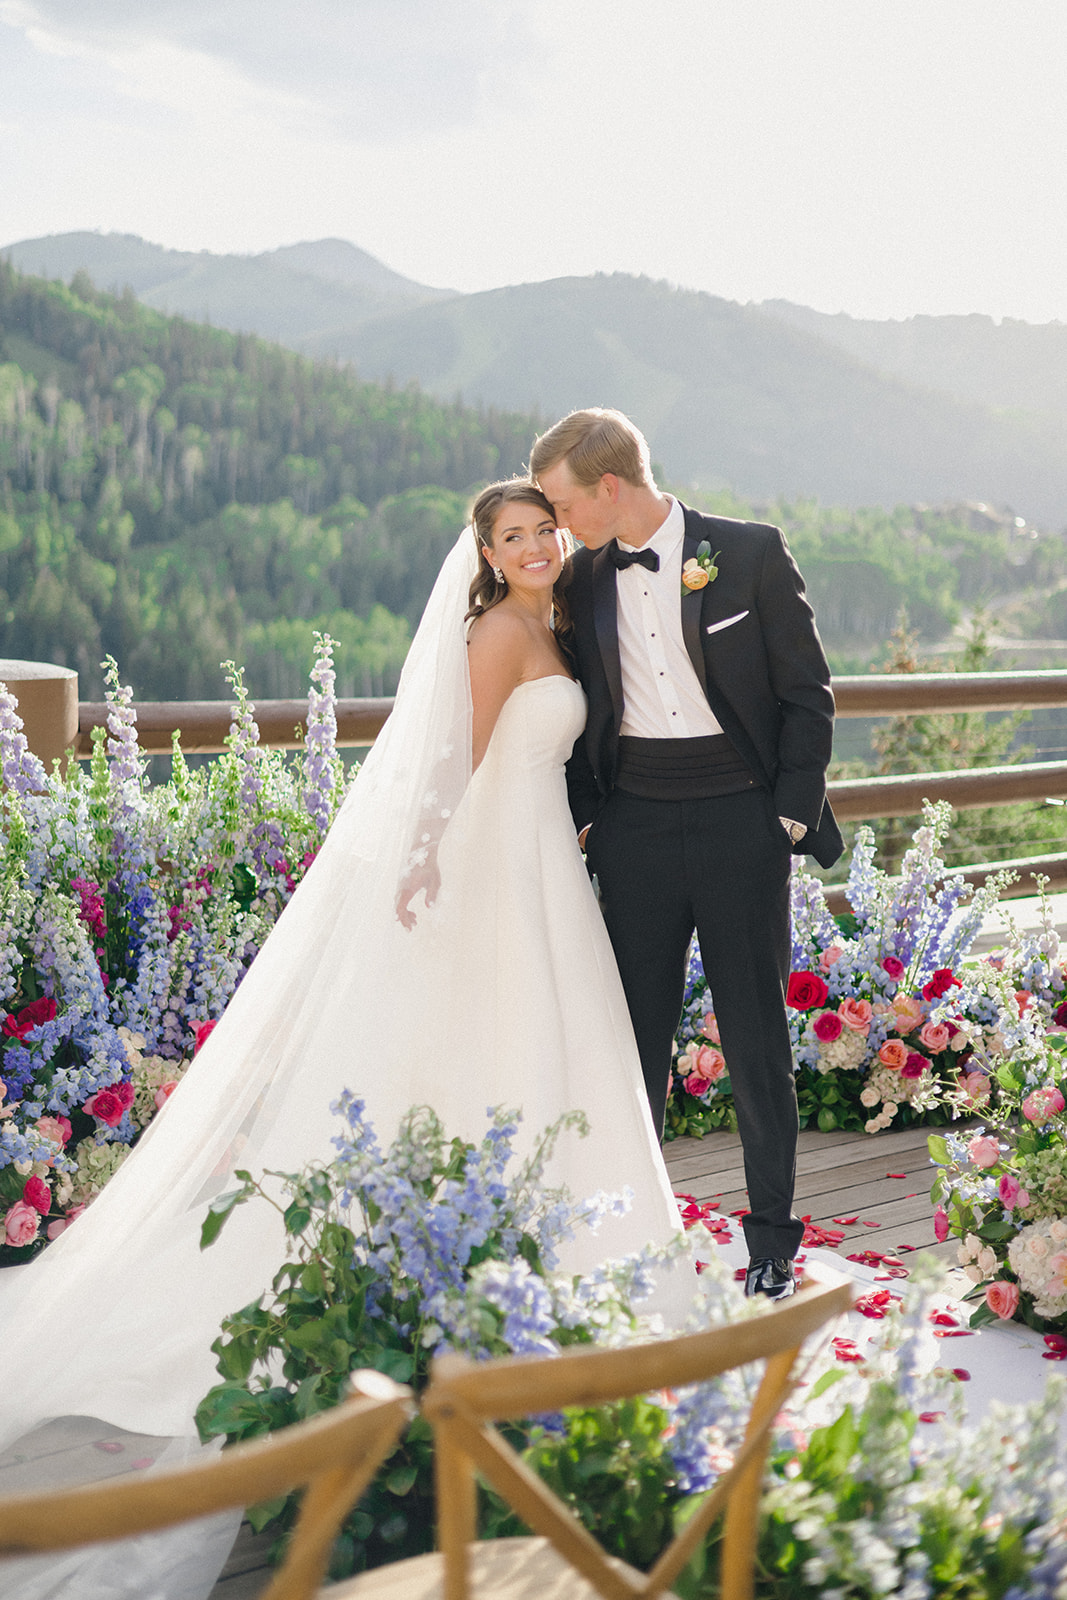 Fairytale Wedding at Stein Eriksen Lodge in Park City, Utah